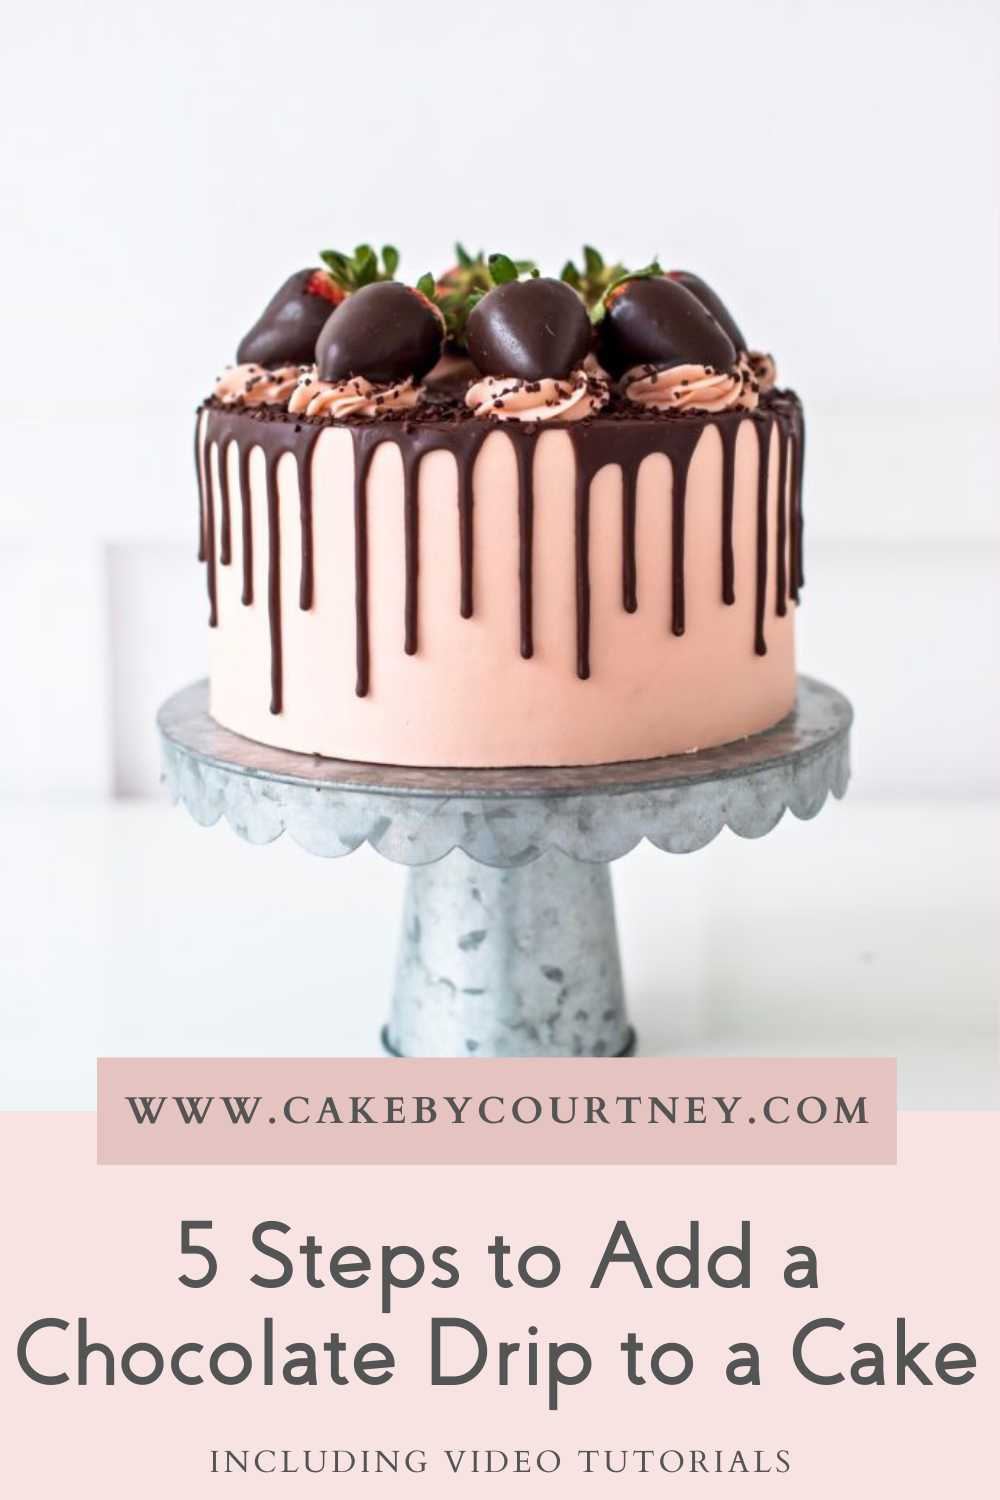 5 steps to add a chocolate drip to a cake. www.cakebycourtney.com